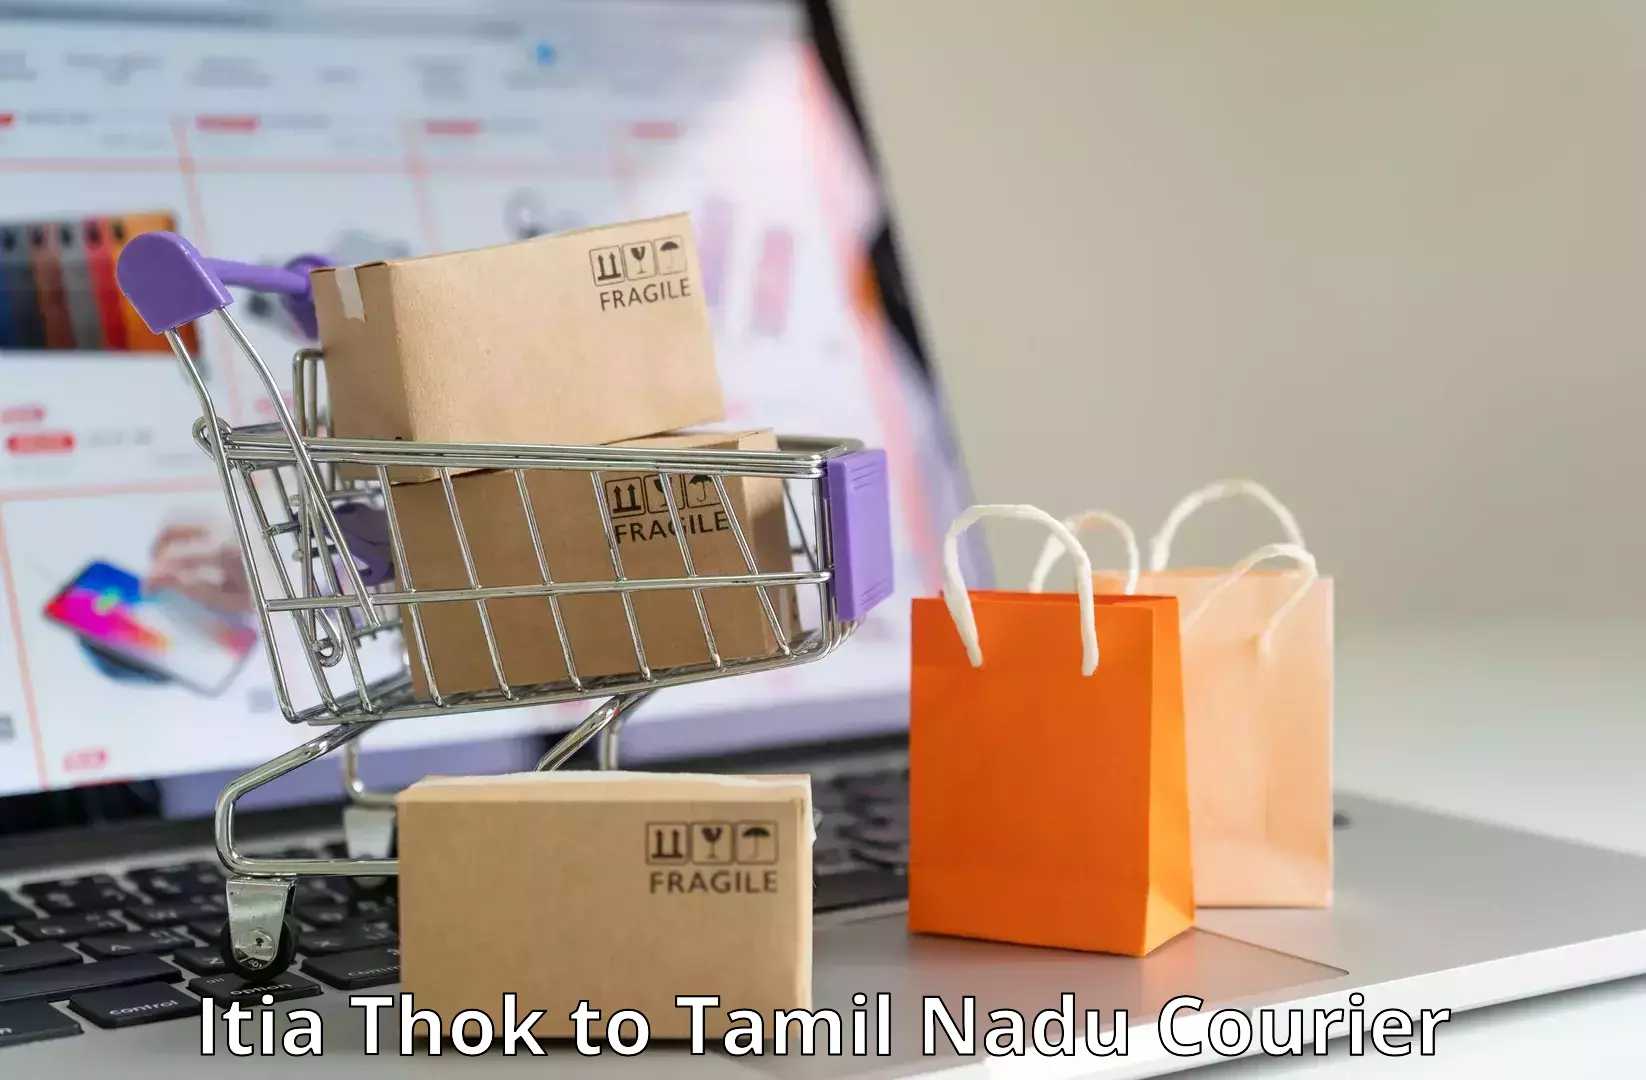 Parcel service for businesses Itia Thok to Rameswaram